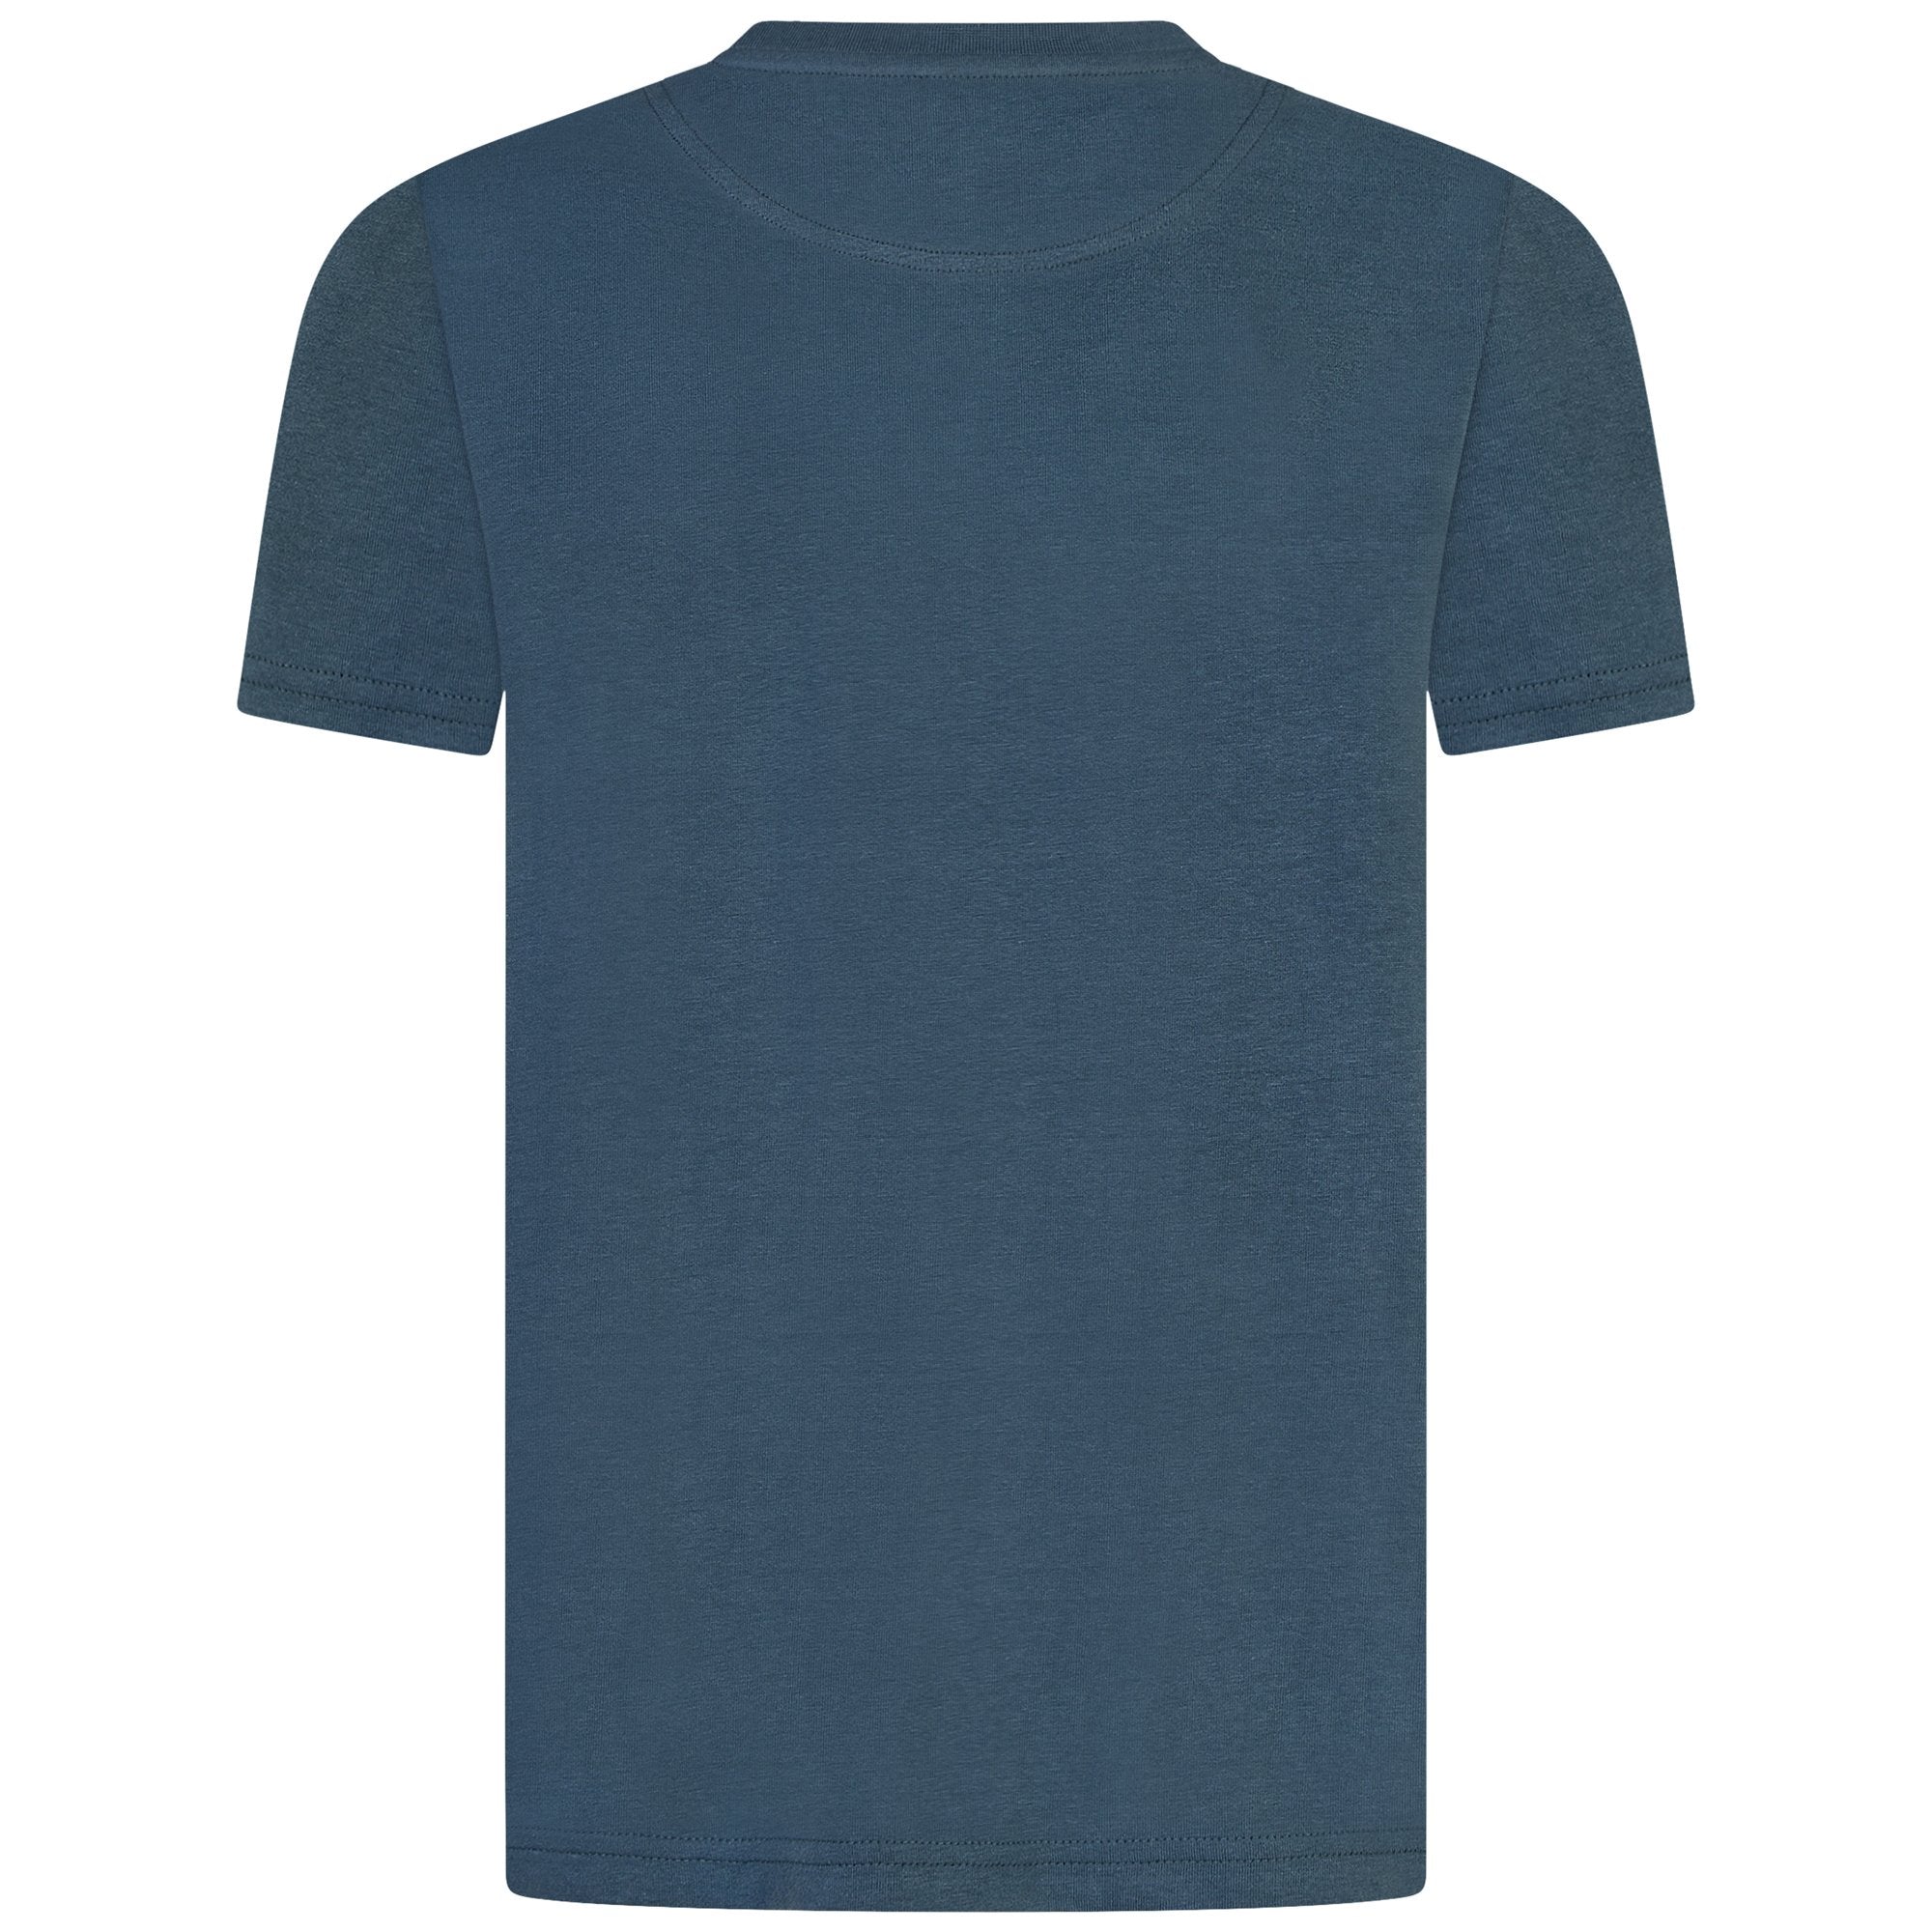 Jongens Classic T-Shirt Orion Blue van Lyle & Scott in de kleur Orion Blue in maat 170-176.